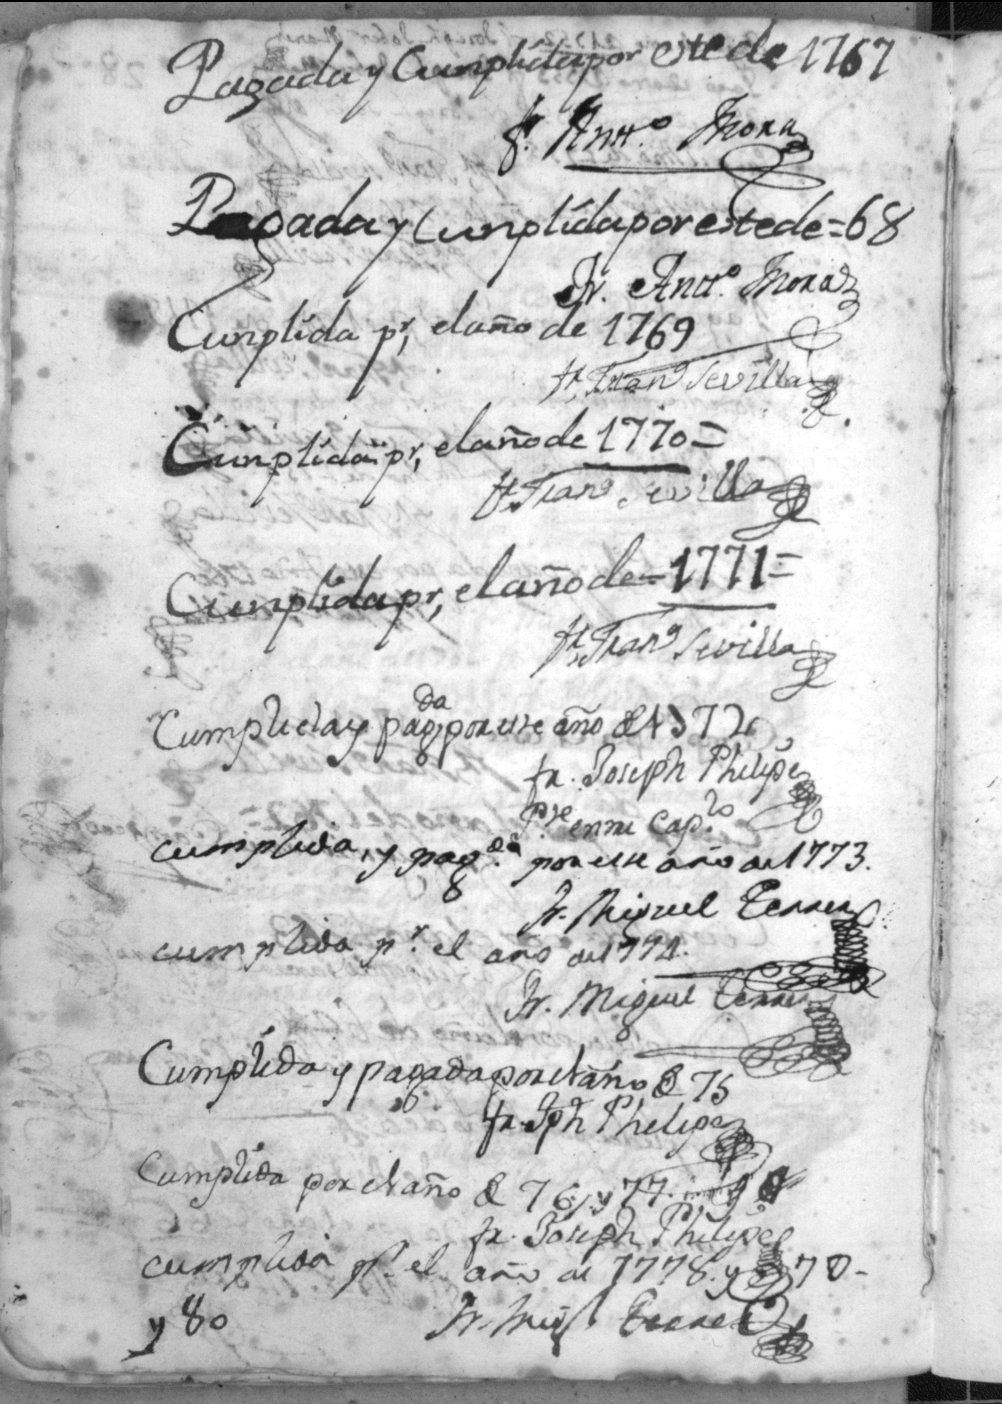 Registro de censos y pías memorias del Convento de San Francisco de Caravaca. Años 1713-1802.